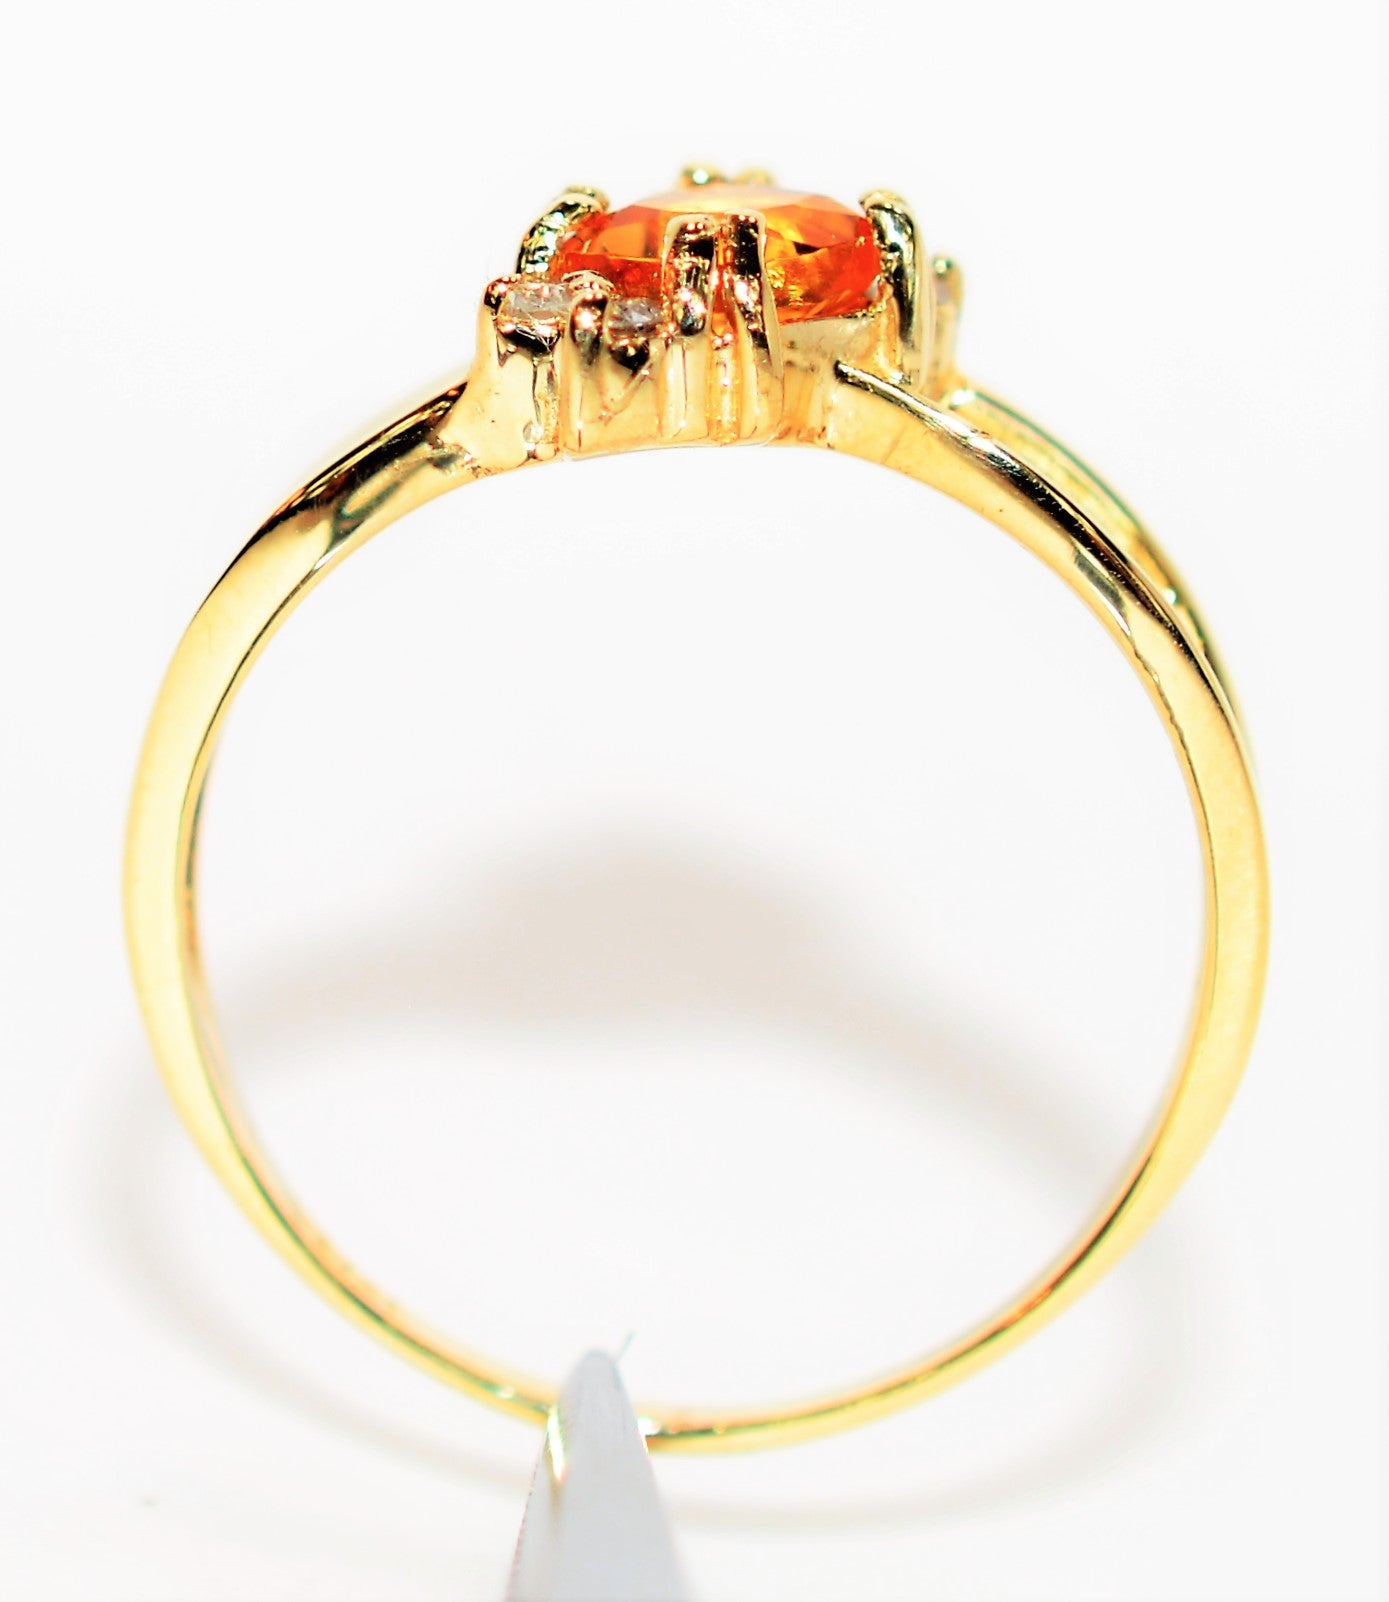 Natural Orange Sapphire & Diamond Ring 10K Solid Gold .76tcw September Birthstone Ring Gemstone Ring Orange Ring Women's Ring Ladies Ring